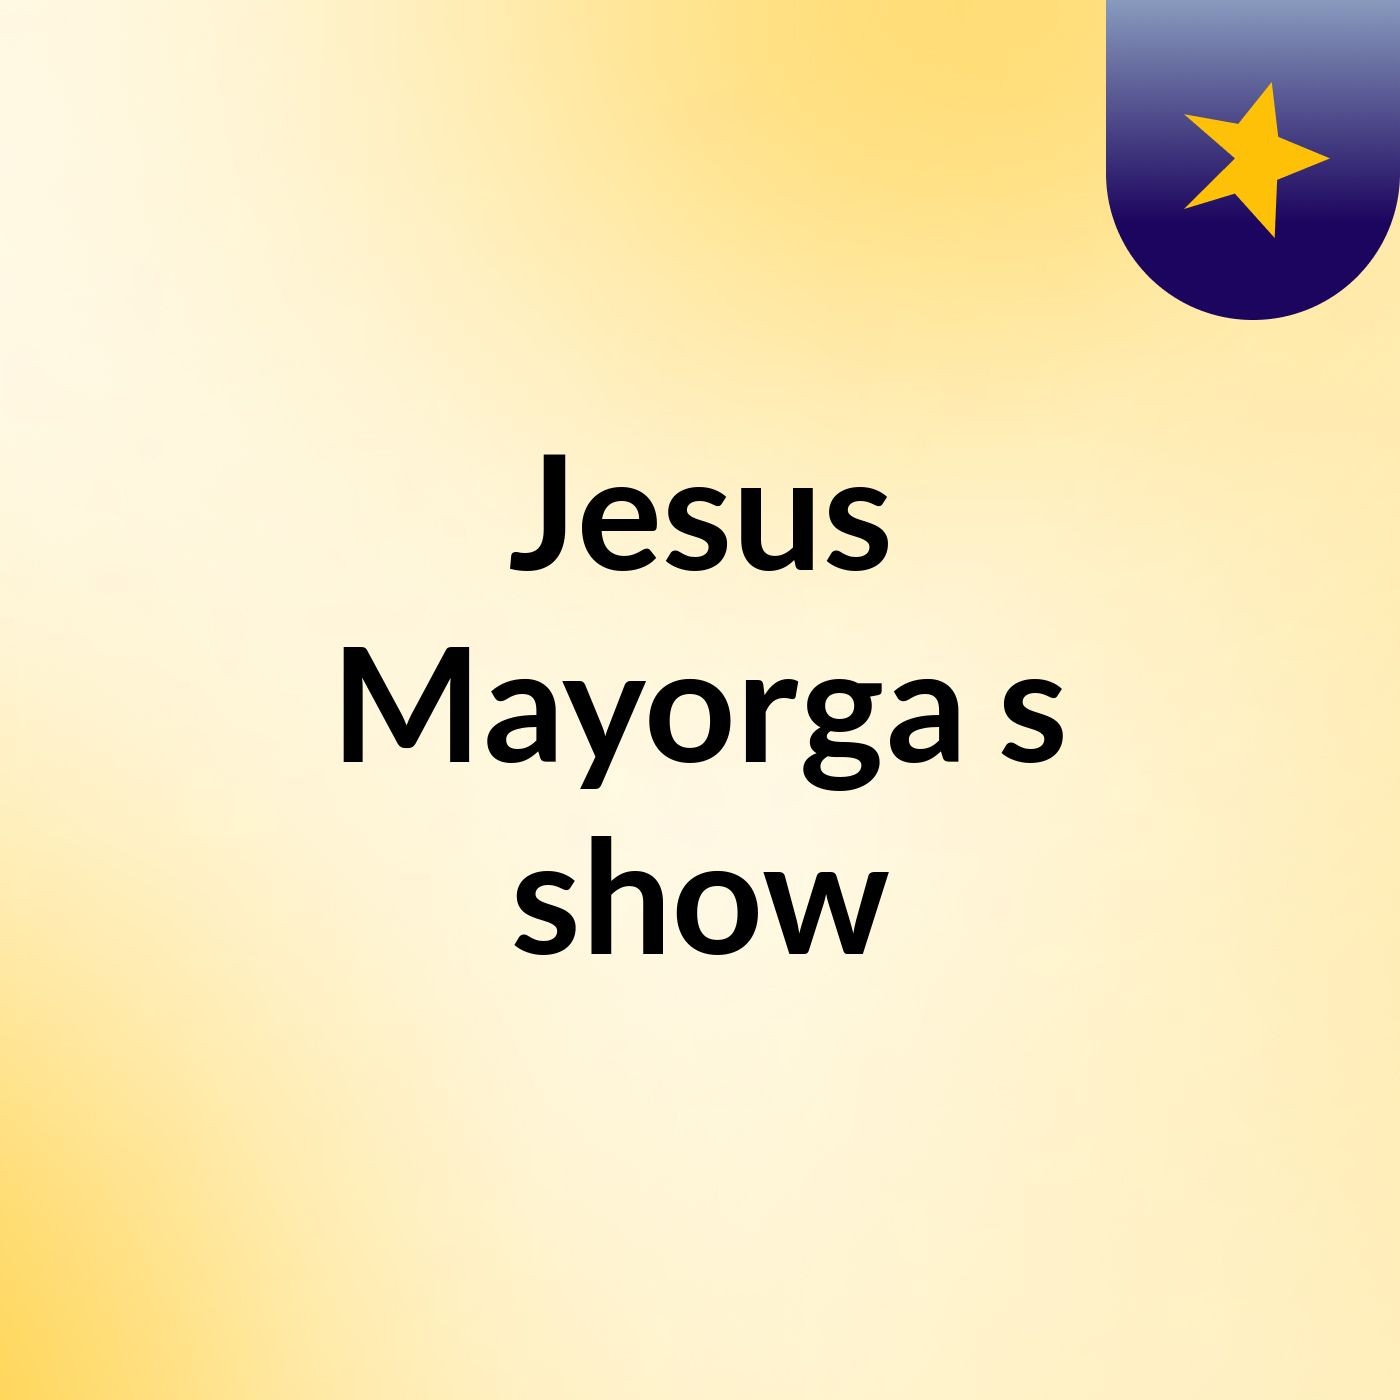 Jesus Mayorga's show